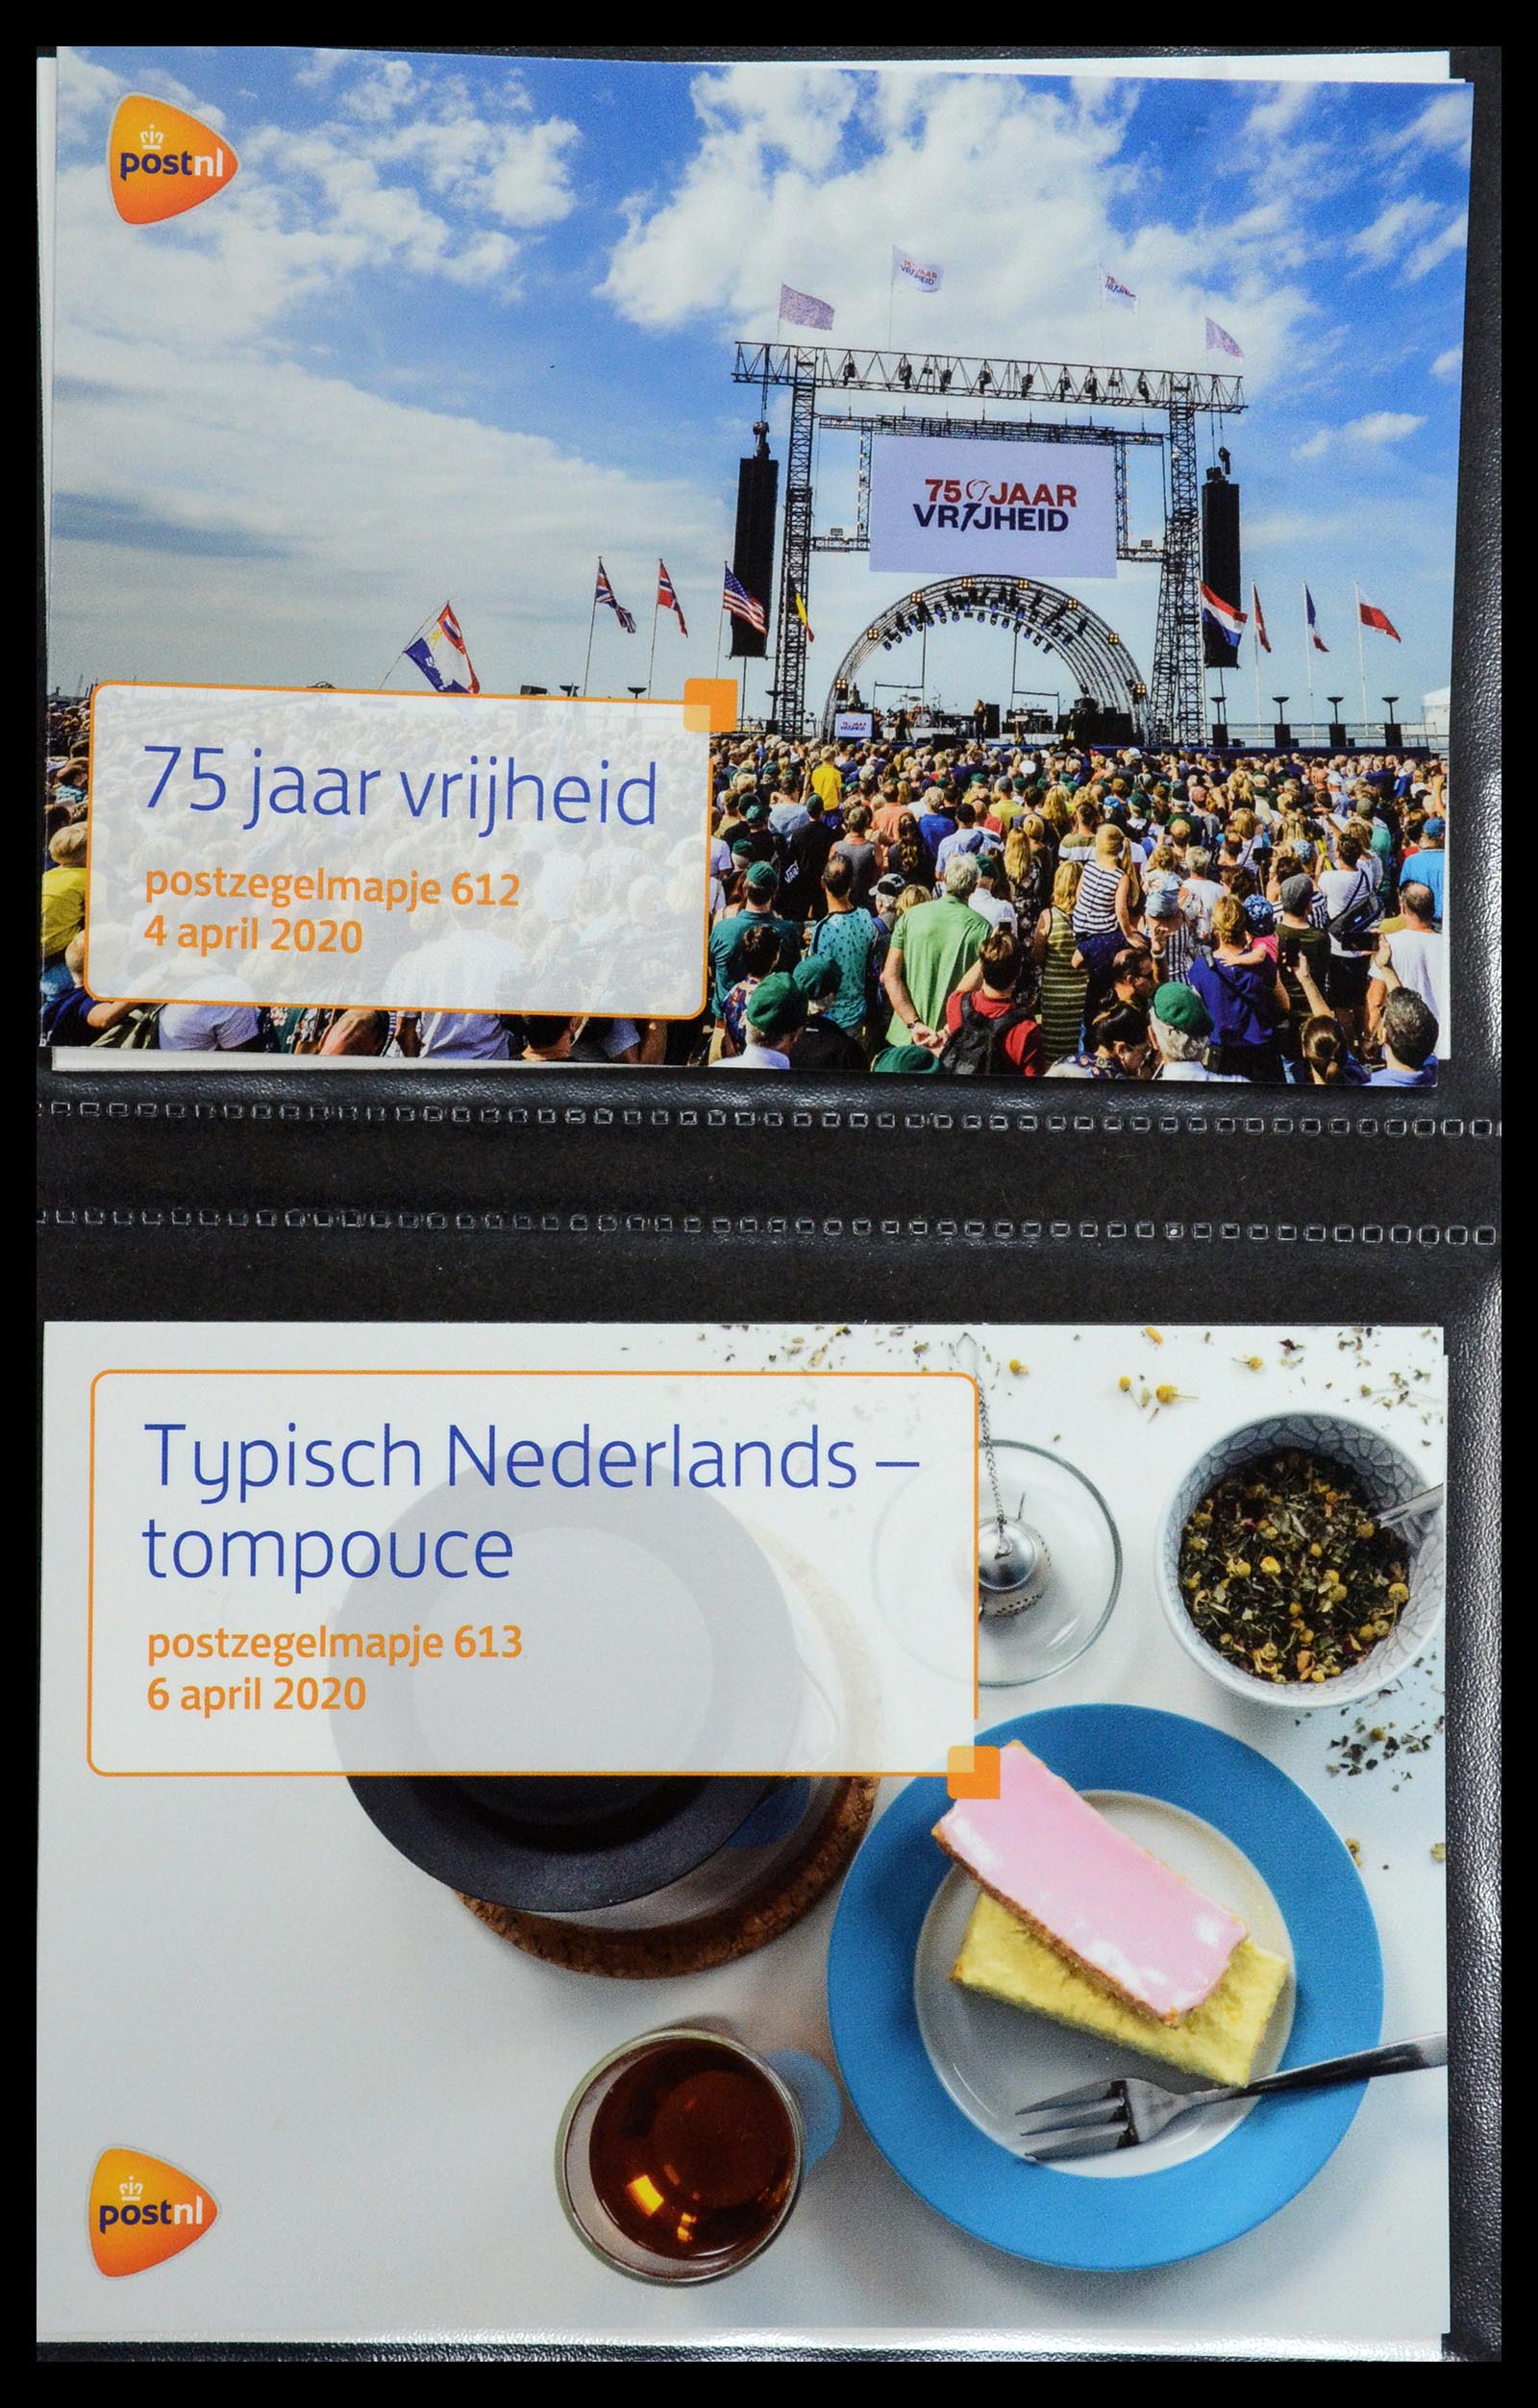 35144 371 - Stamp Collection 35144 Netherlands PTT presentation packs 1982-2021!